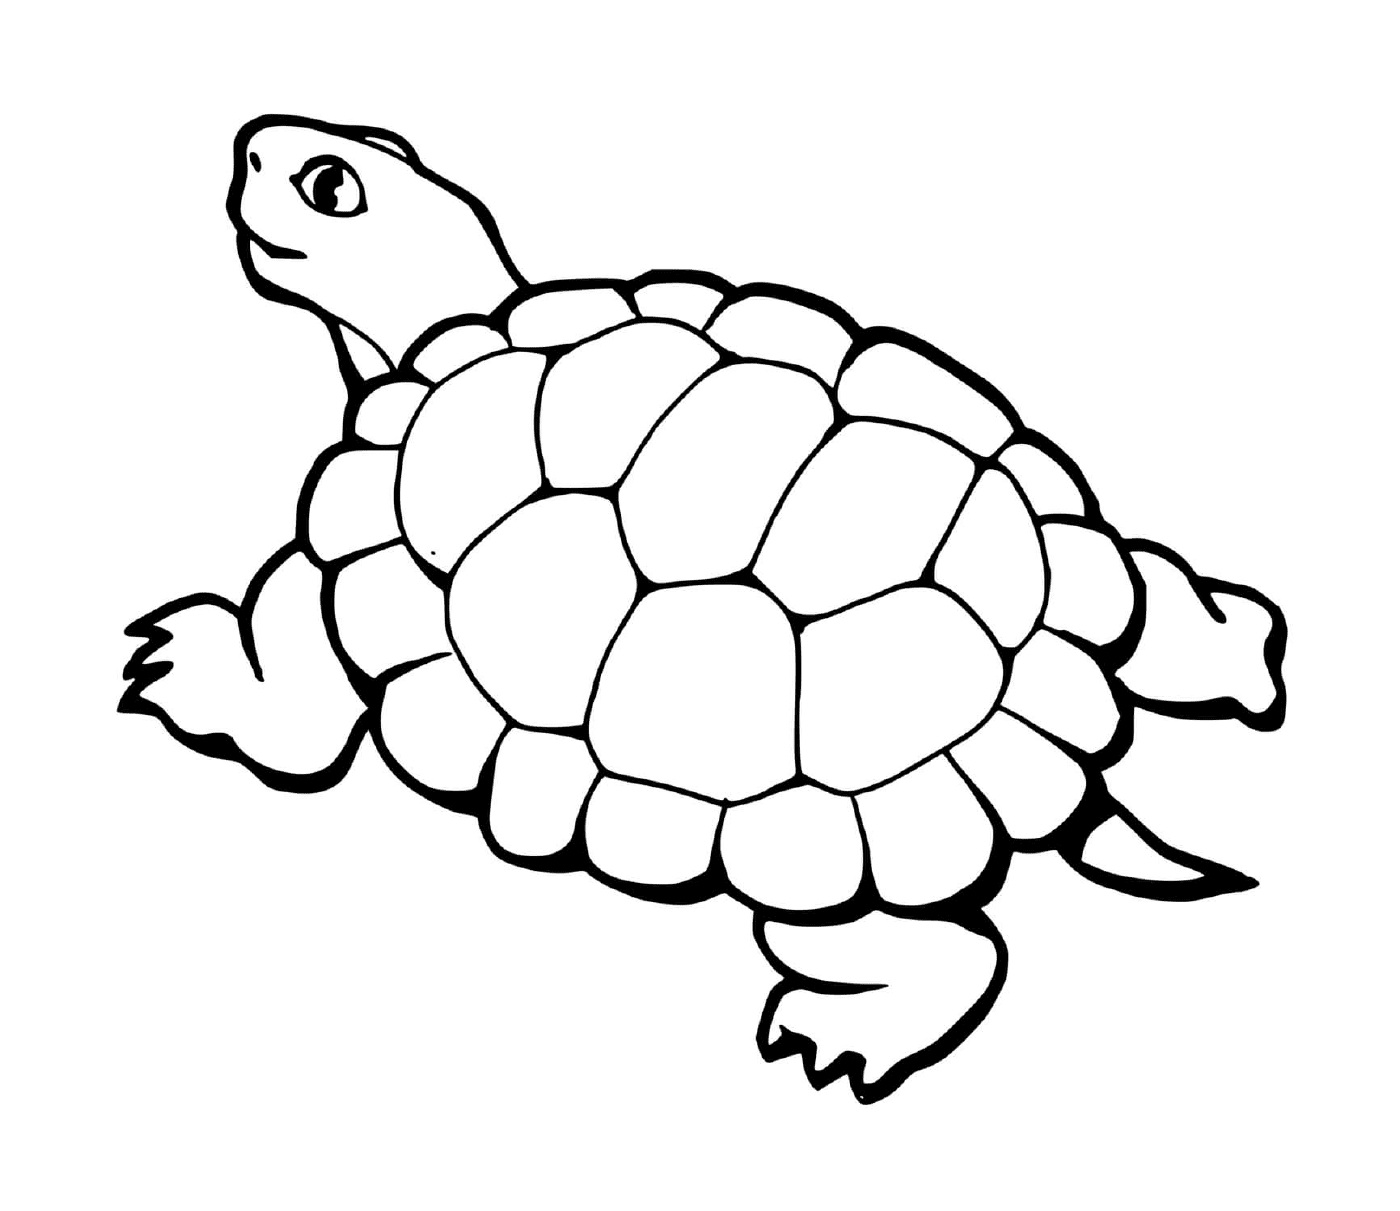  Черепаха с хвостом 